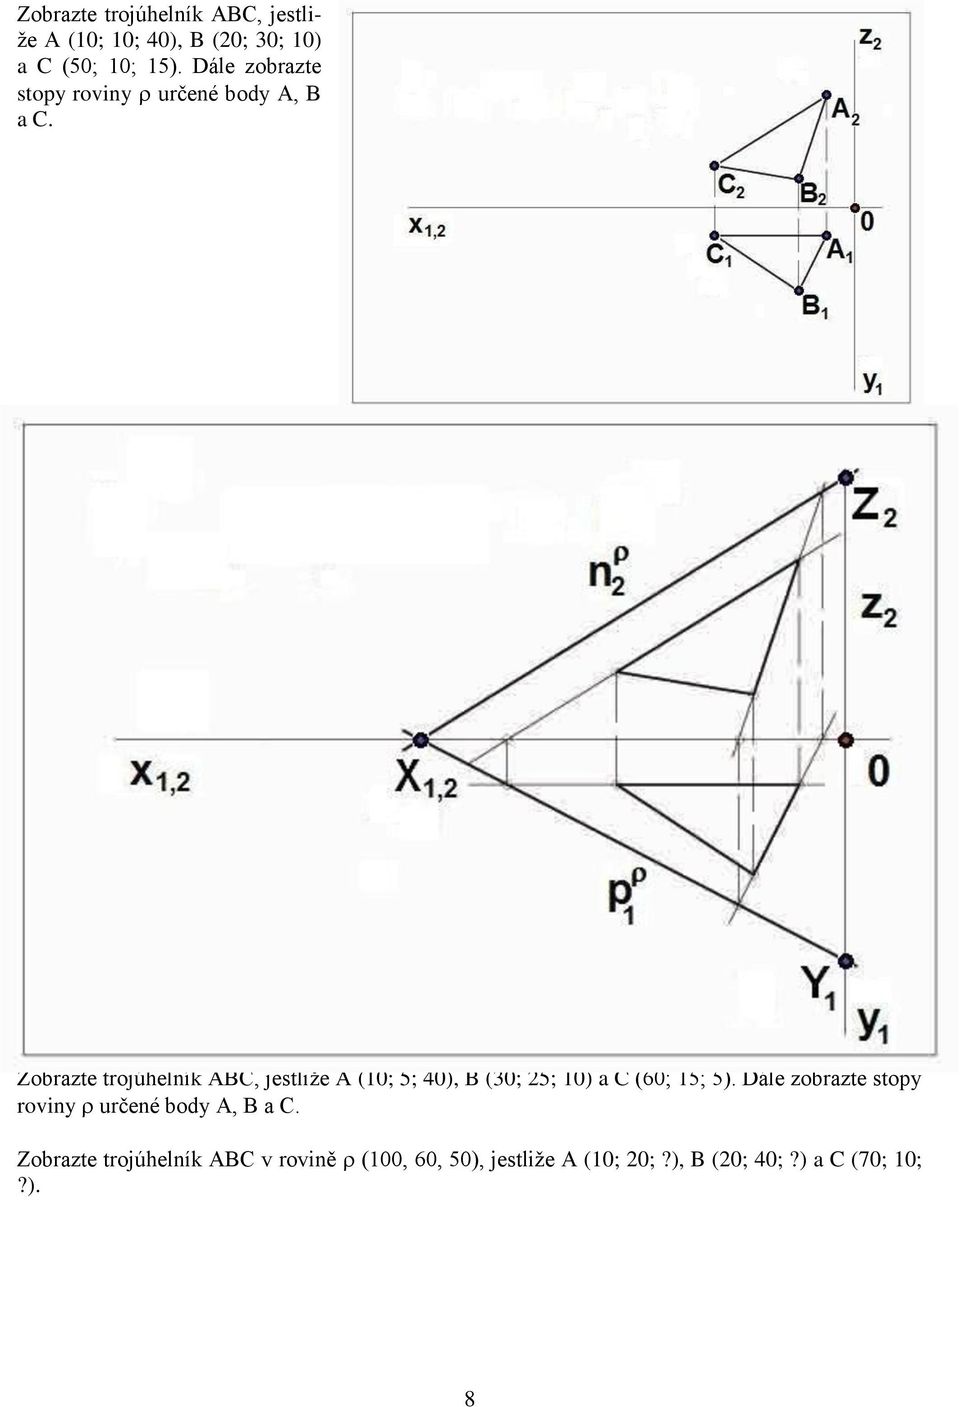 Zobrazte trojúhelník ABC, jestliže A (10; 5; 40), B (30; 25; 10) a C (60; 15; 5).